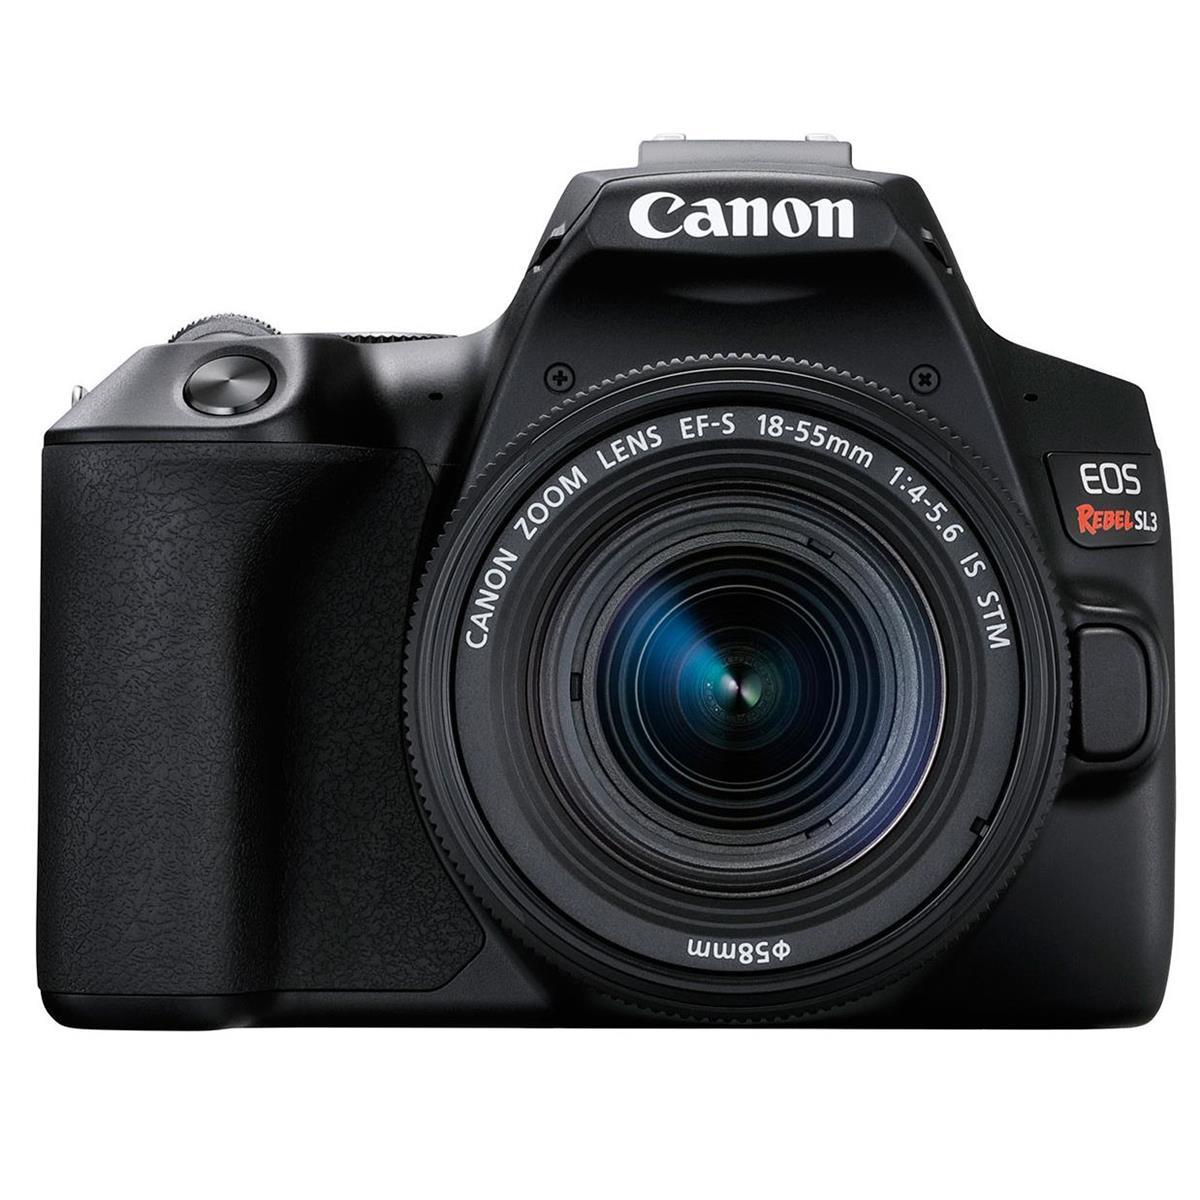 Canon EOS Rebel SL3 DSLR Camera with EF-S 18-55mm f/4-5.6 IS STM Lens - Black